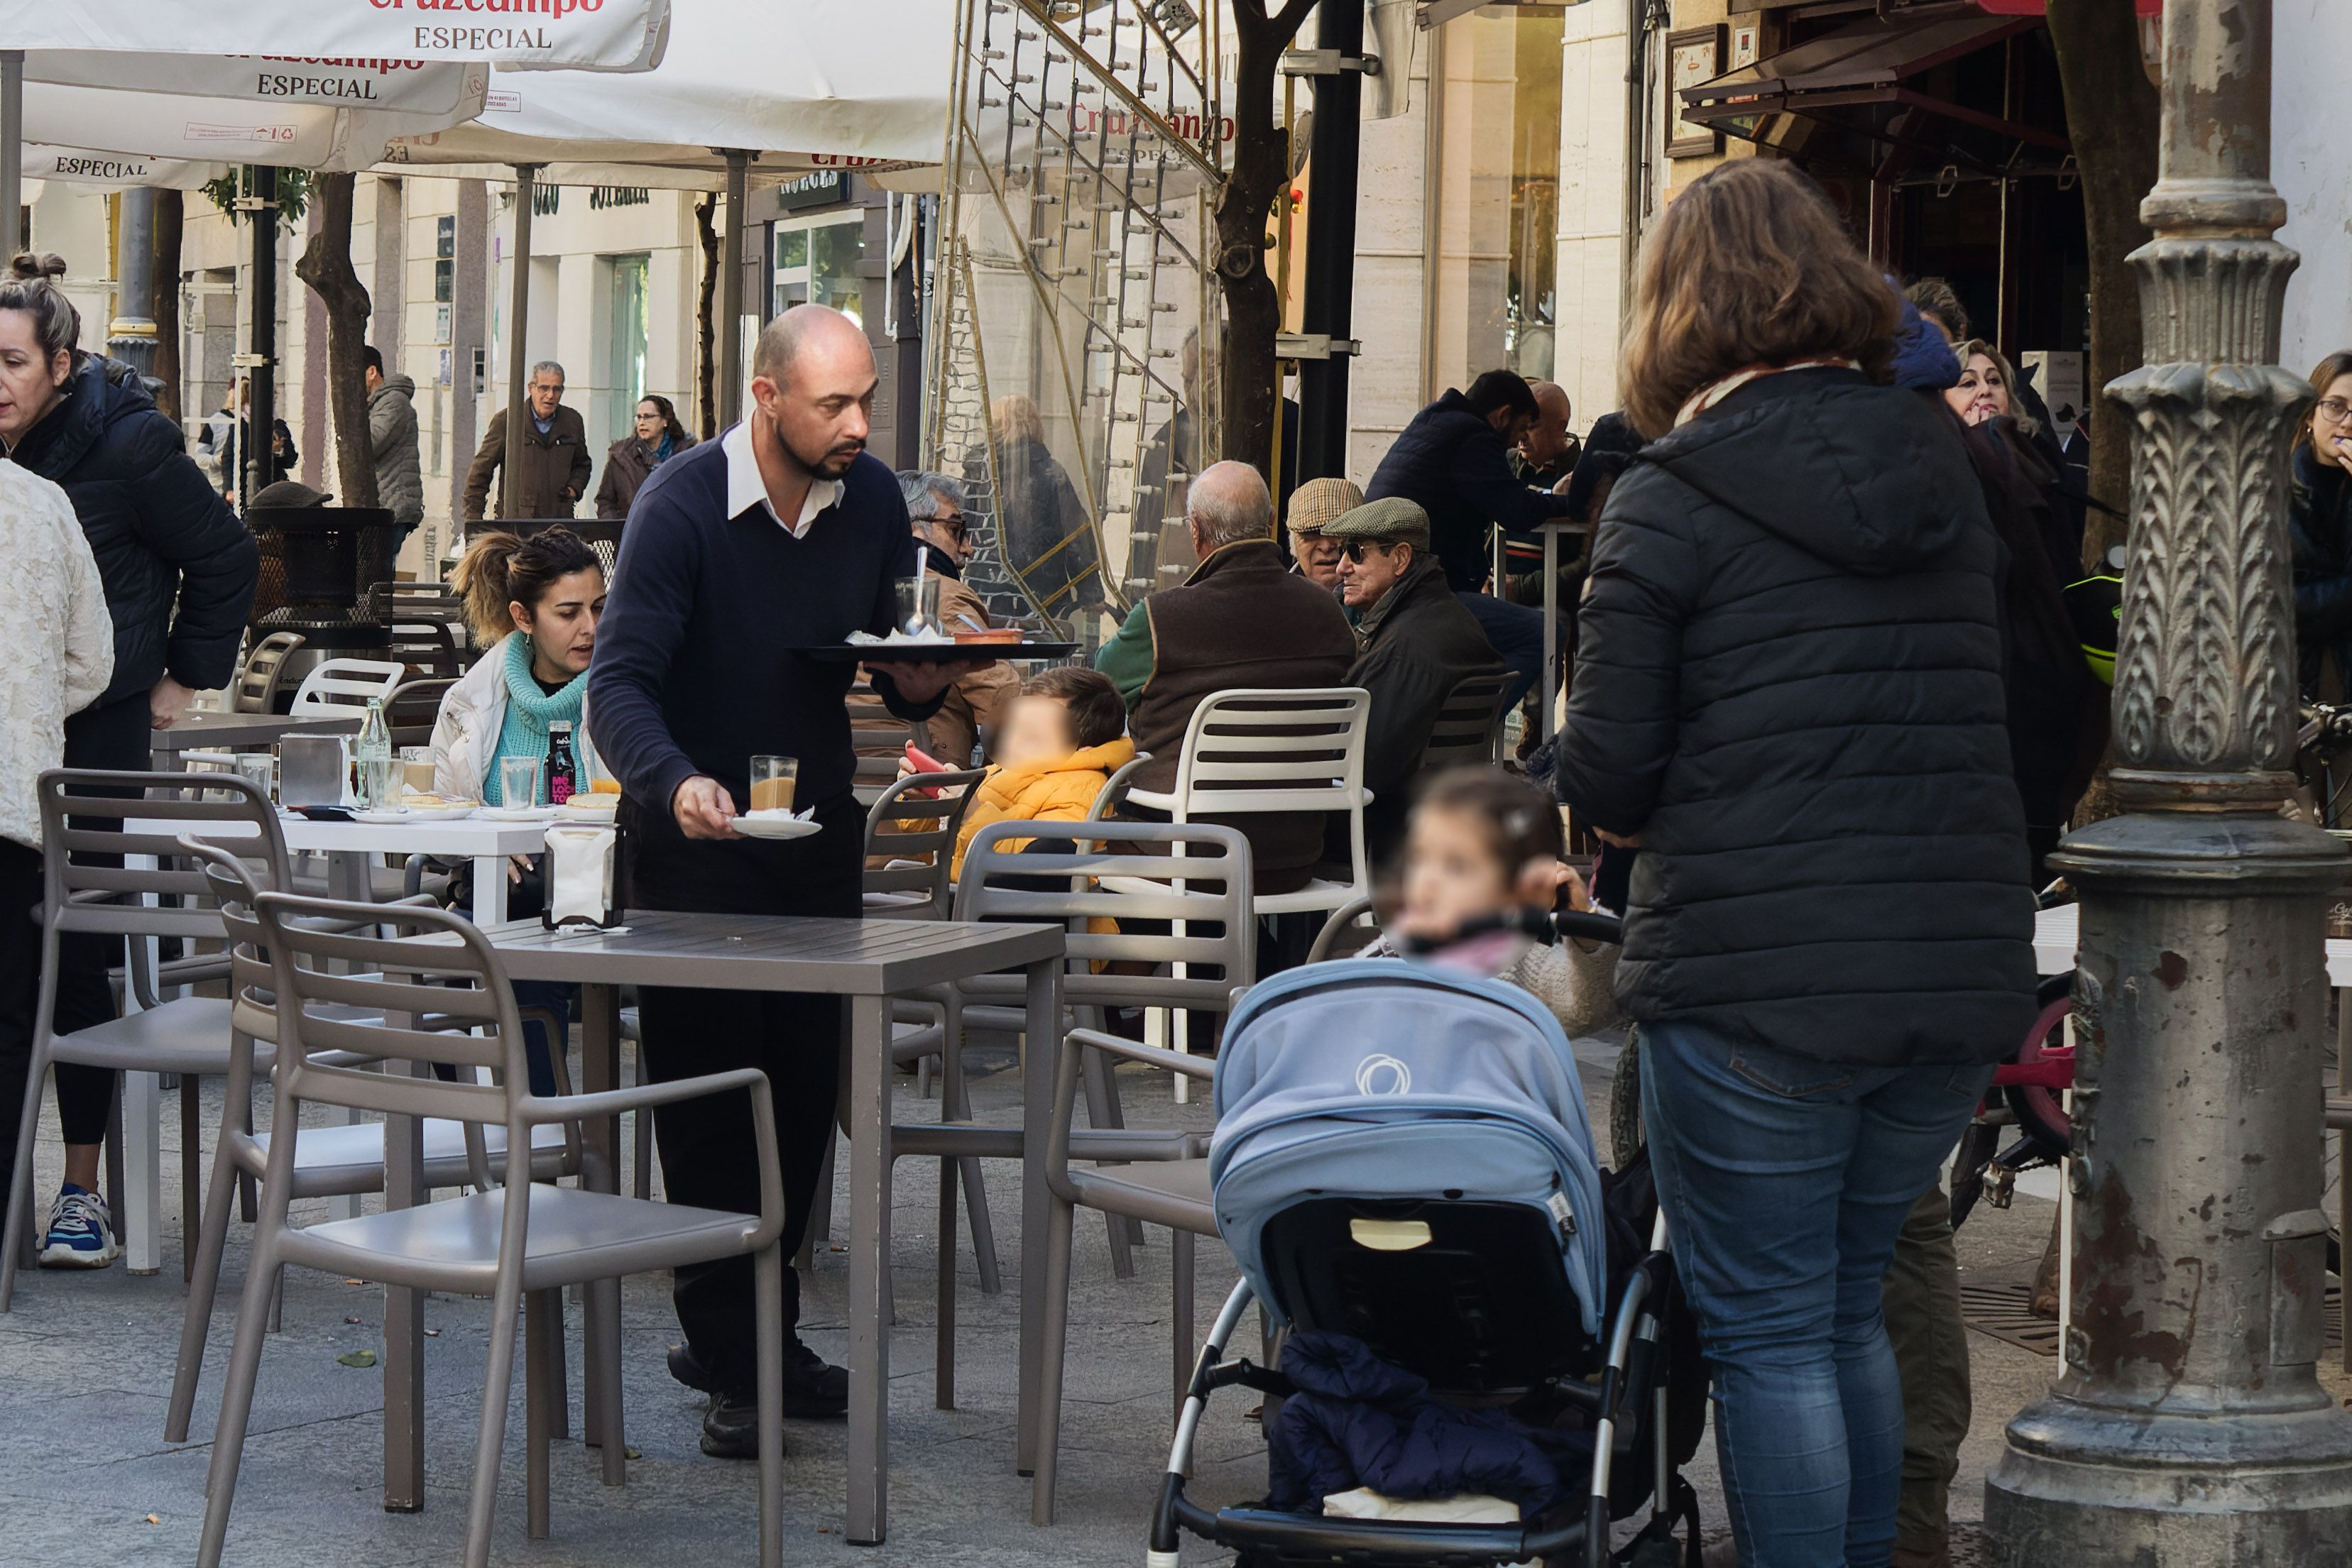 El paro vuelve a bajar en Andalucía con gran importancia del sector servicios. En la imagen, un camarero en una terraza.